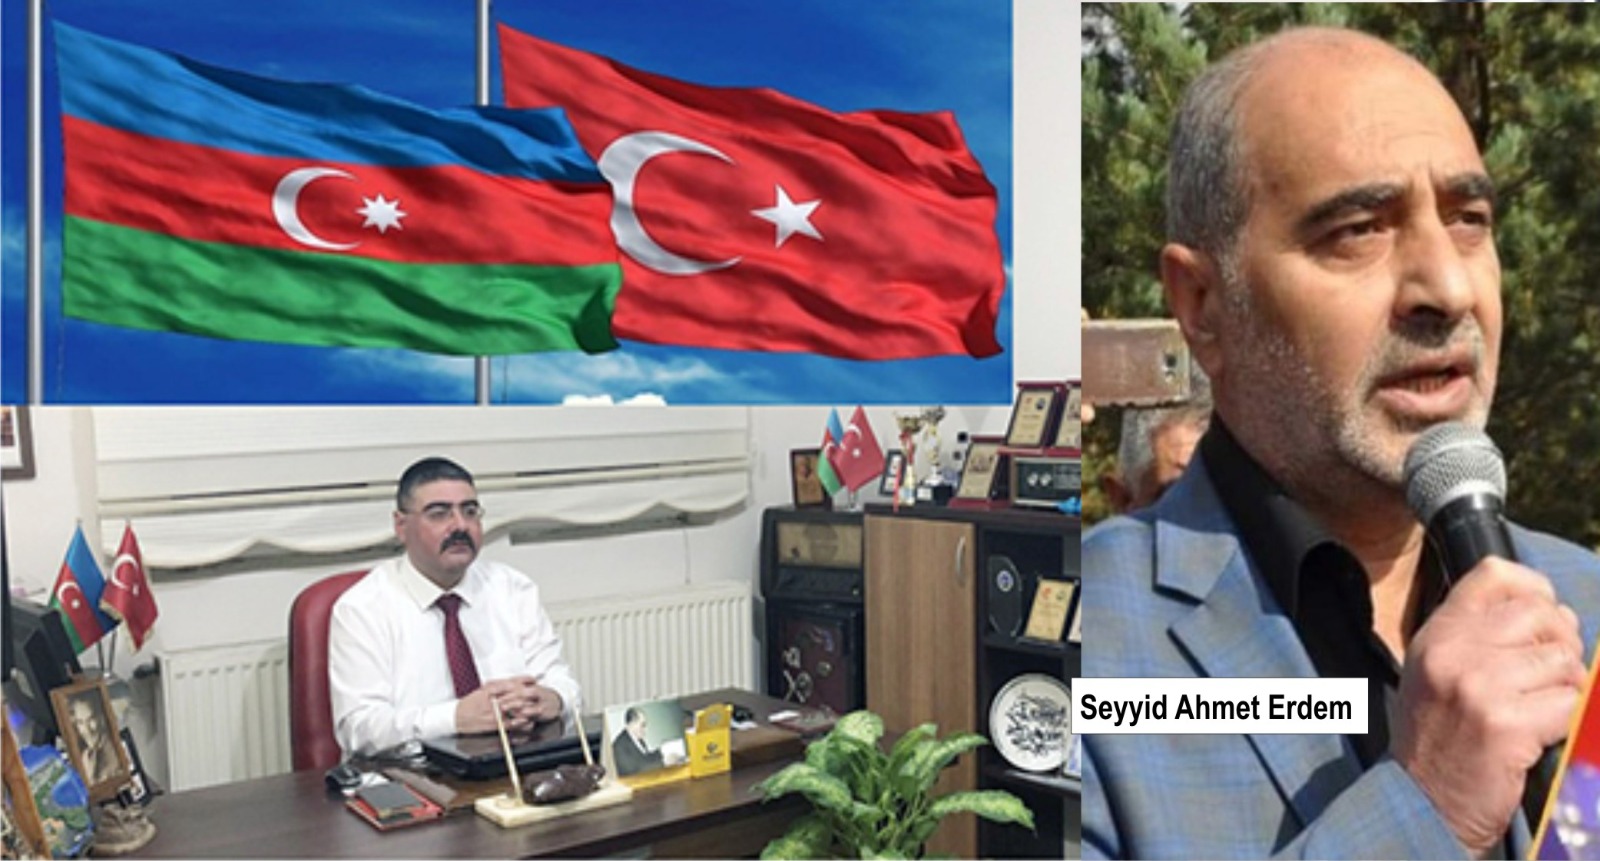 Başkan Daşdelen: “Seyyid Ahmet Erdeme yapılan saldırıyı şiddetle kınıyorum”